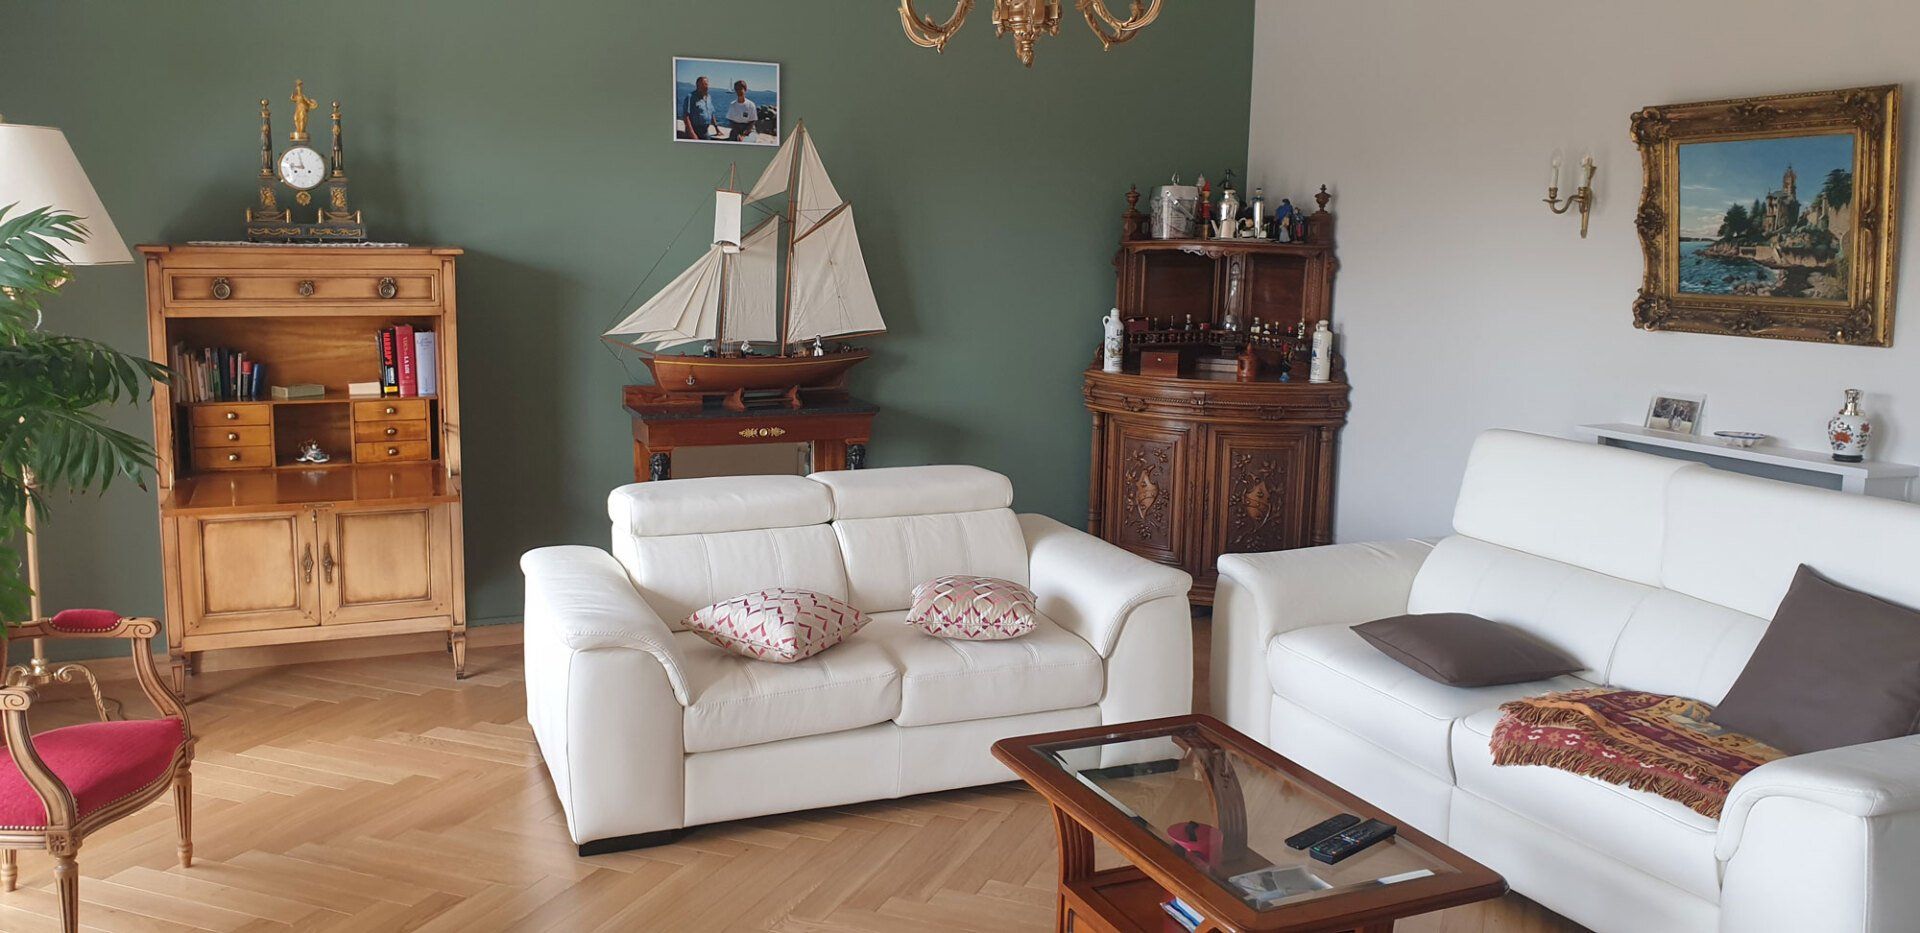 Salon aménagé avec une maquette de bateau et un mur vert